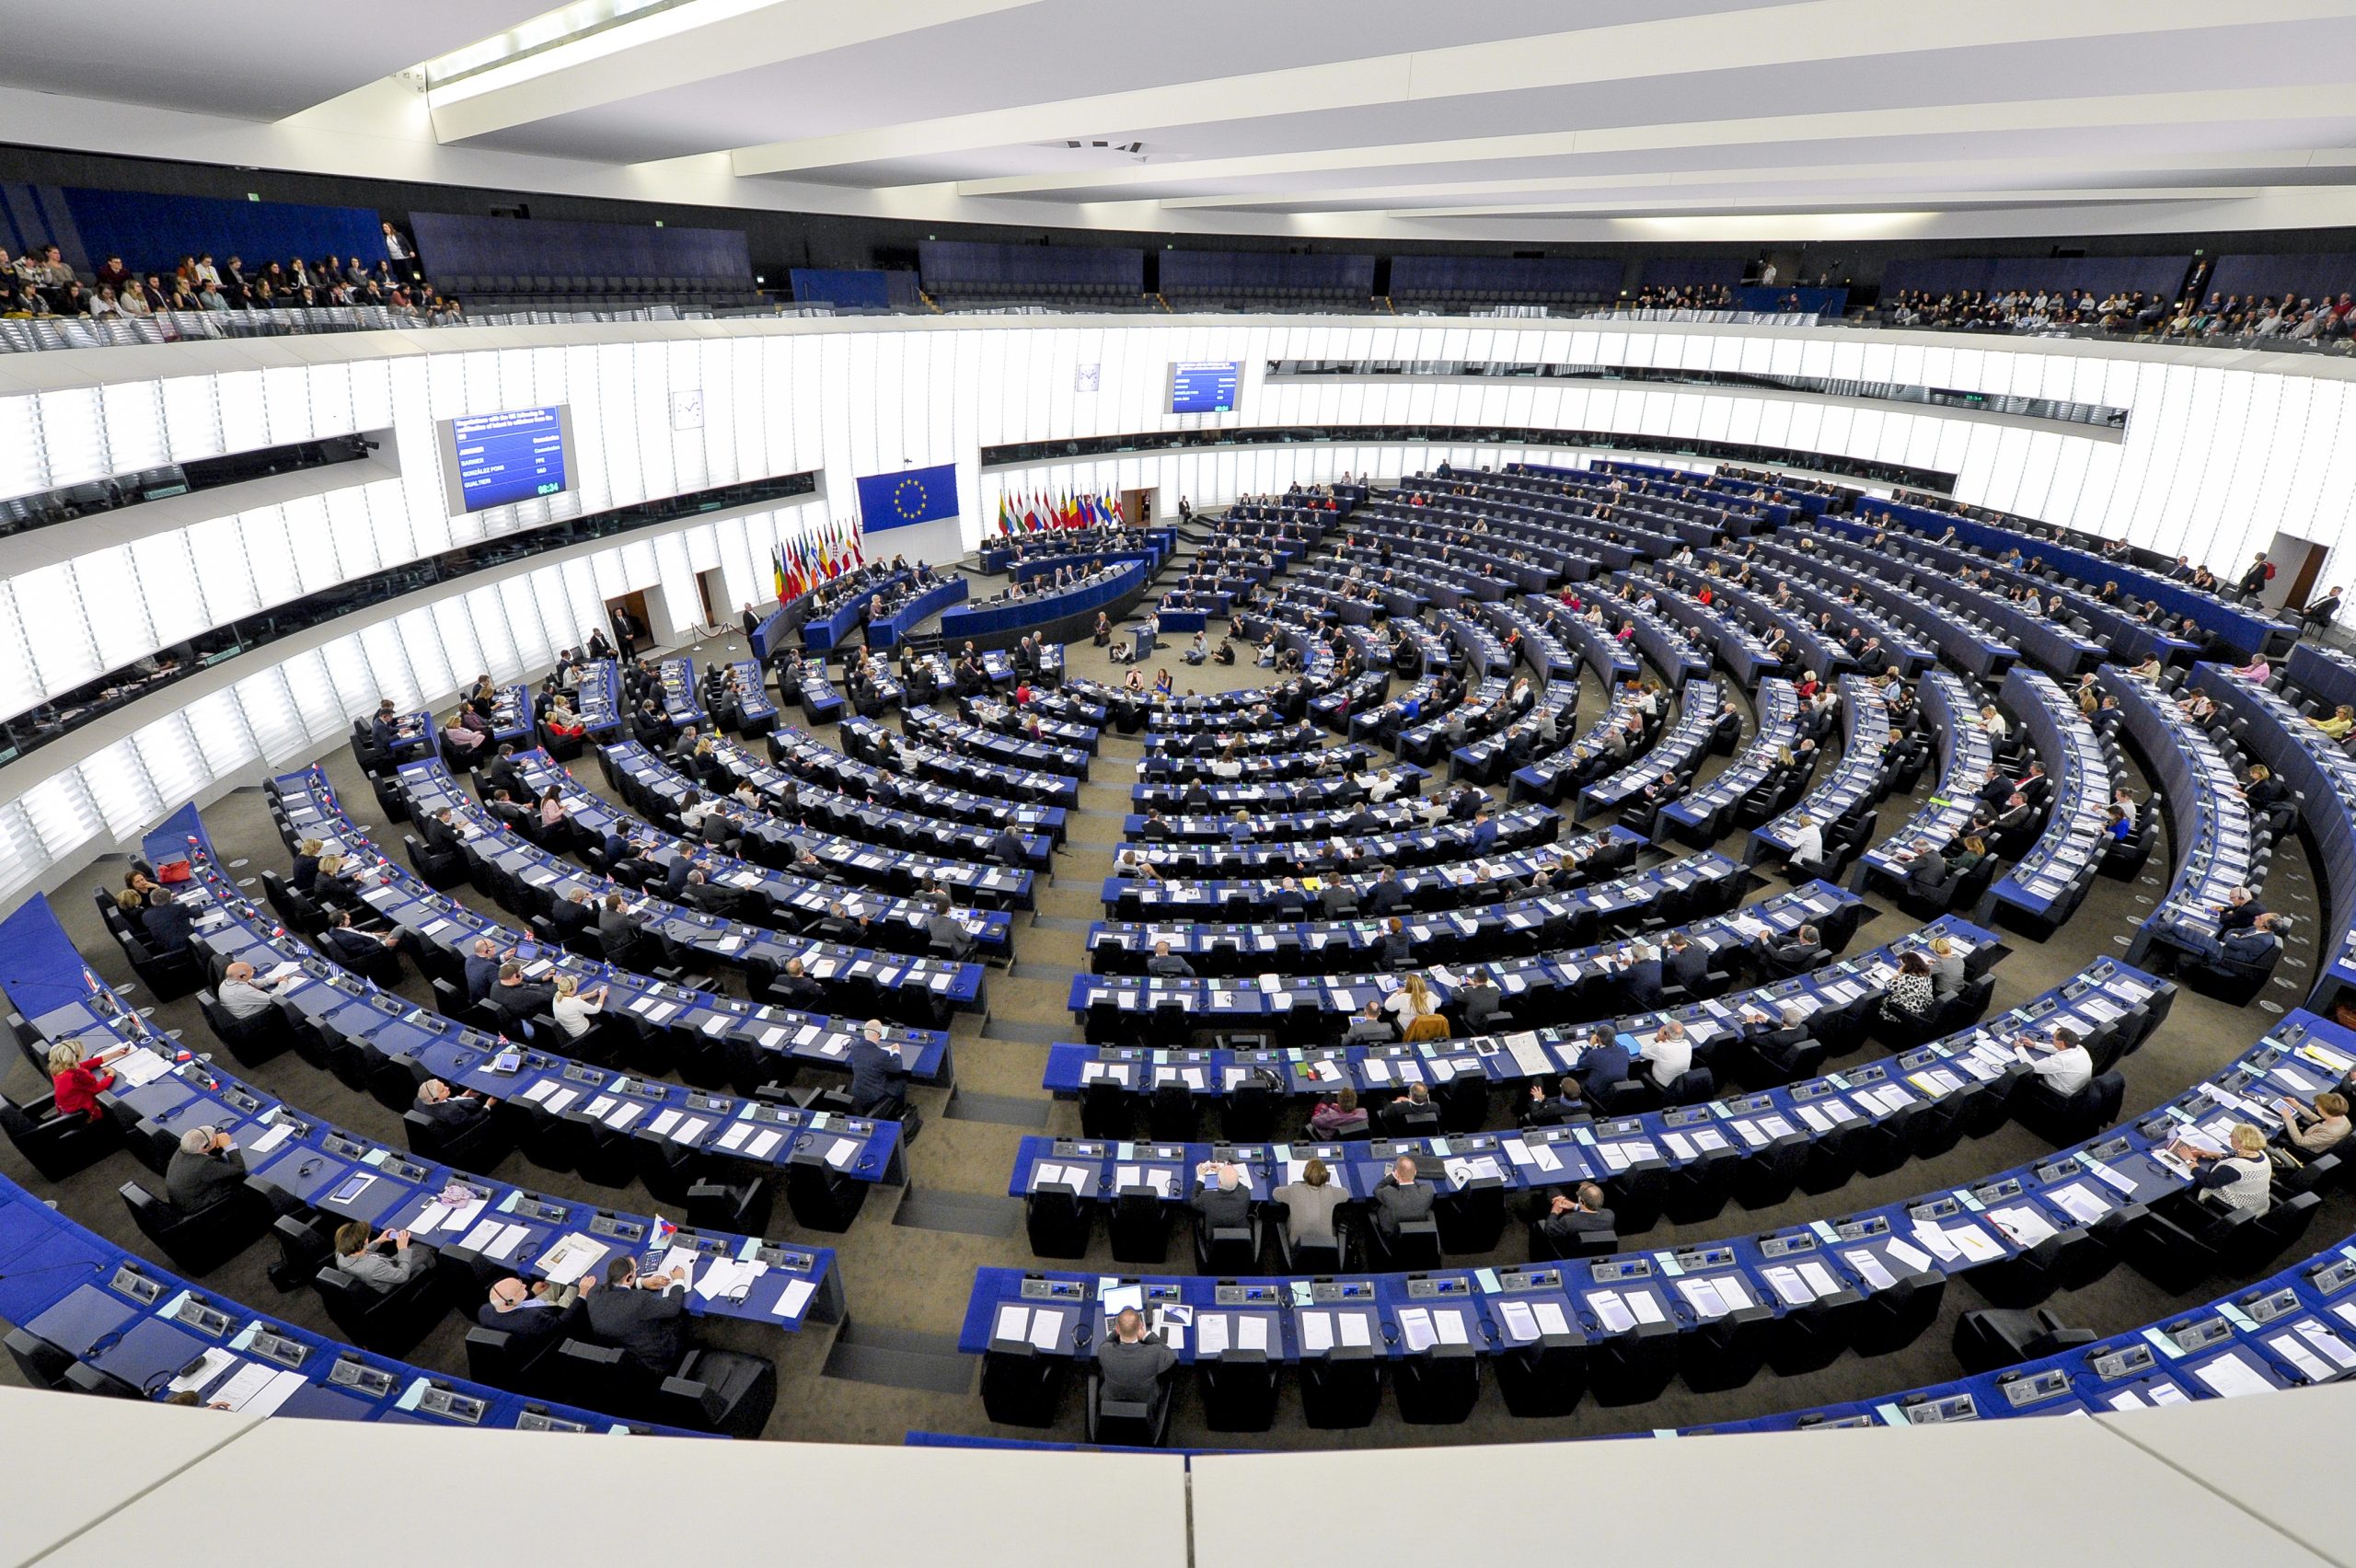 طرح تعلیق جلسات پارلمان اروپا در استراسبورگ در زمستان برای صرفه جویی در انرژی